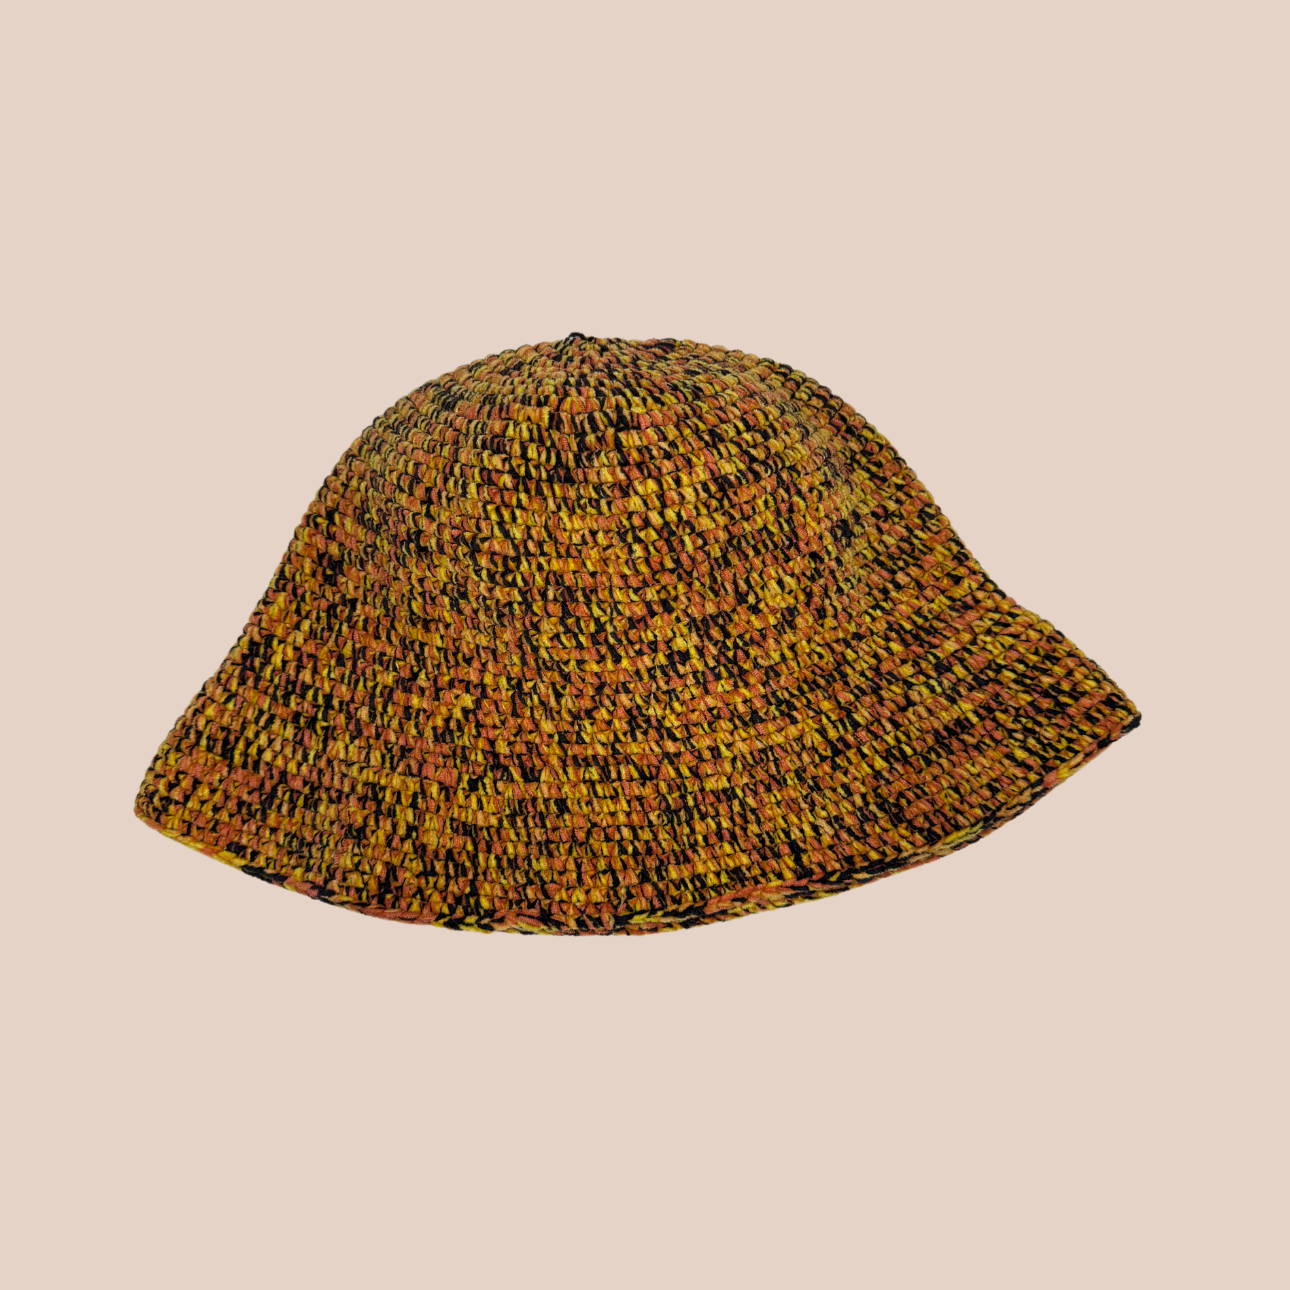 Un bucket hat crocheté en laine et acrylique, arborant des couleurs vives et audacieuses